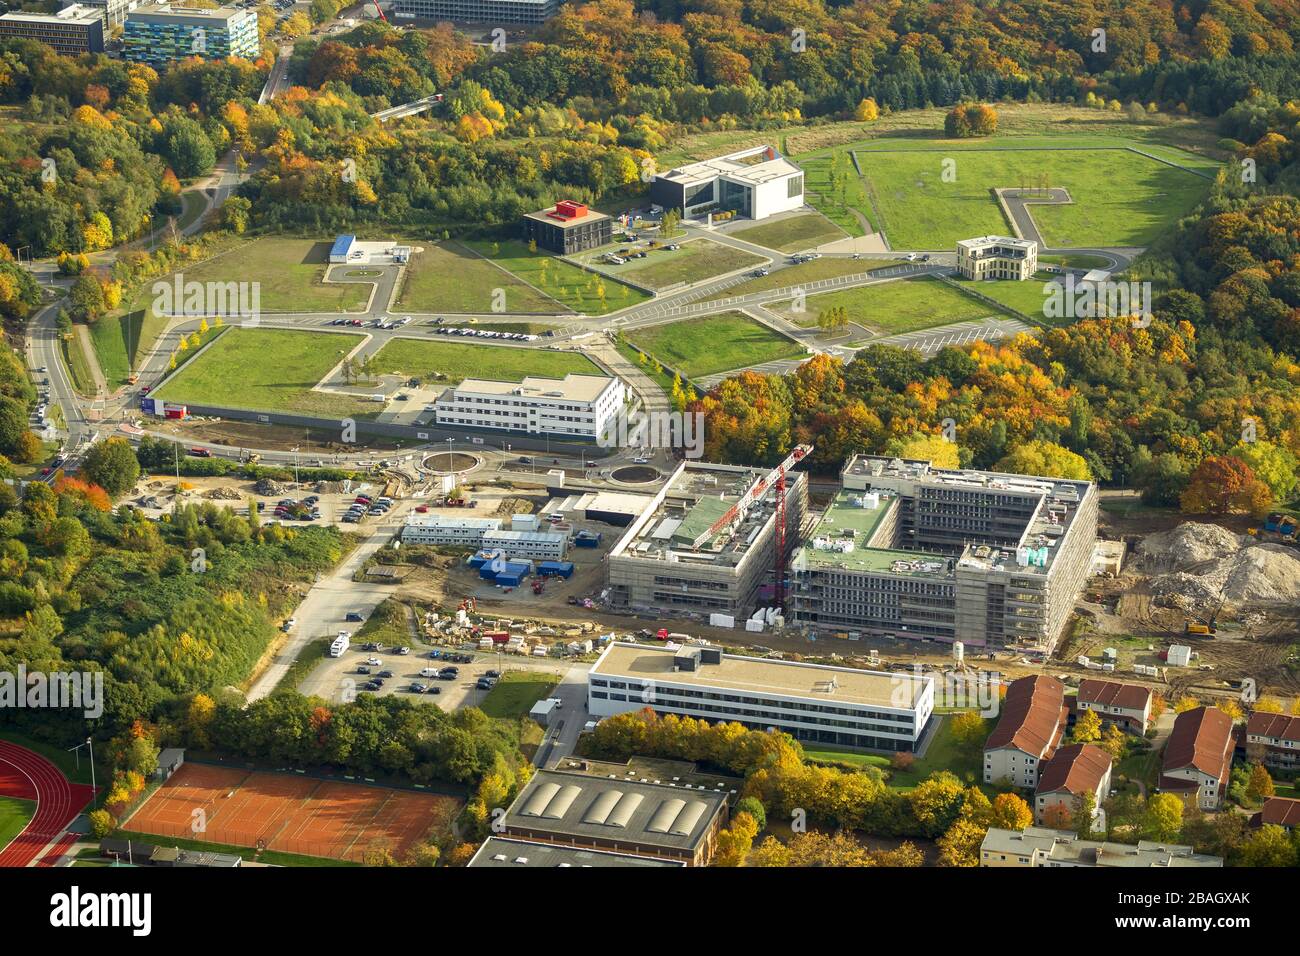 Nuevo campus de Salud del Parque de Biomedicina en Bochum, Hochschule fuer Gesundheit en Bochum-Querenburg, 22.10.2013, vista aérea, Alemania, Renania del Norte-Westfalia, Área Ruhr, Bochum Foto de stock